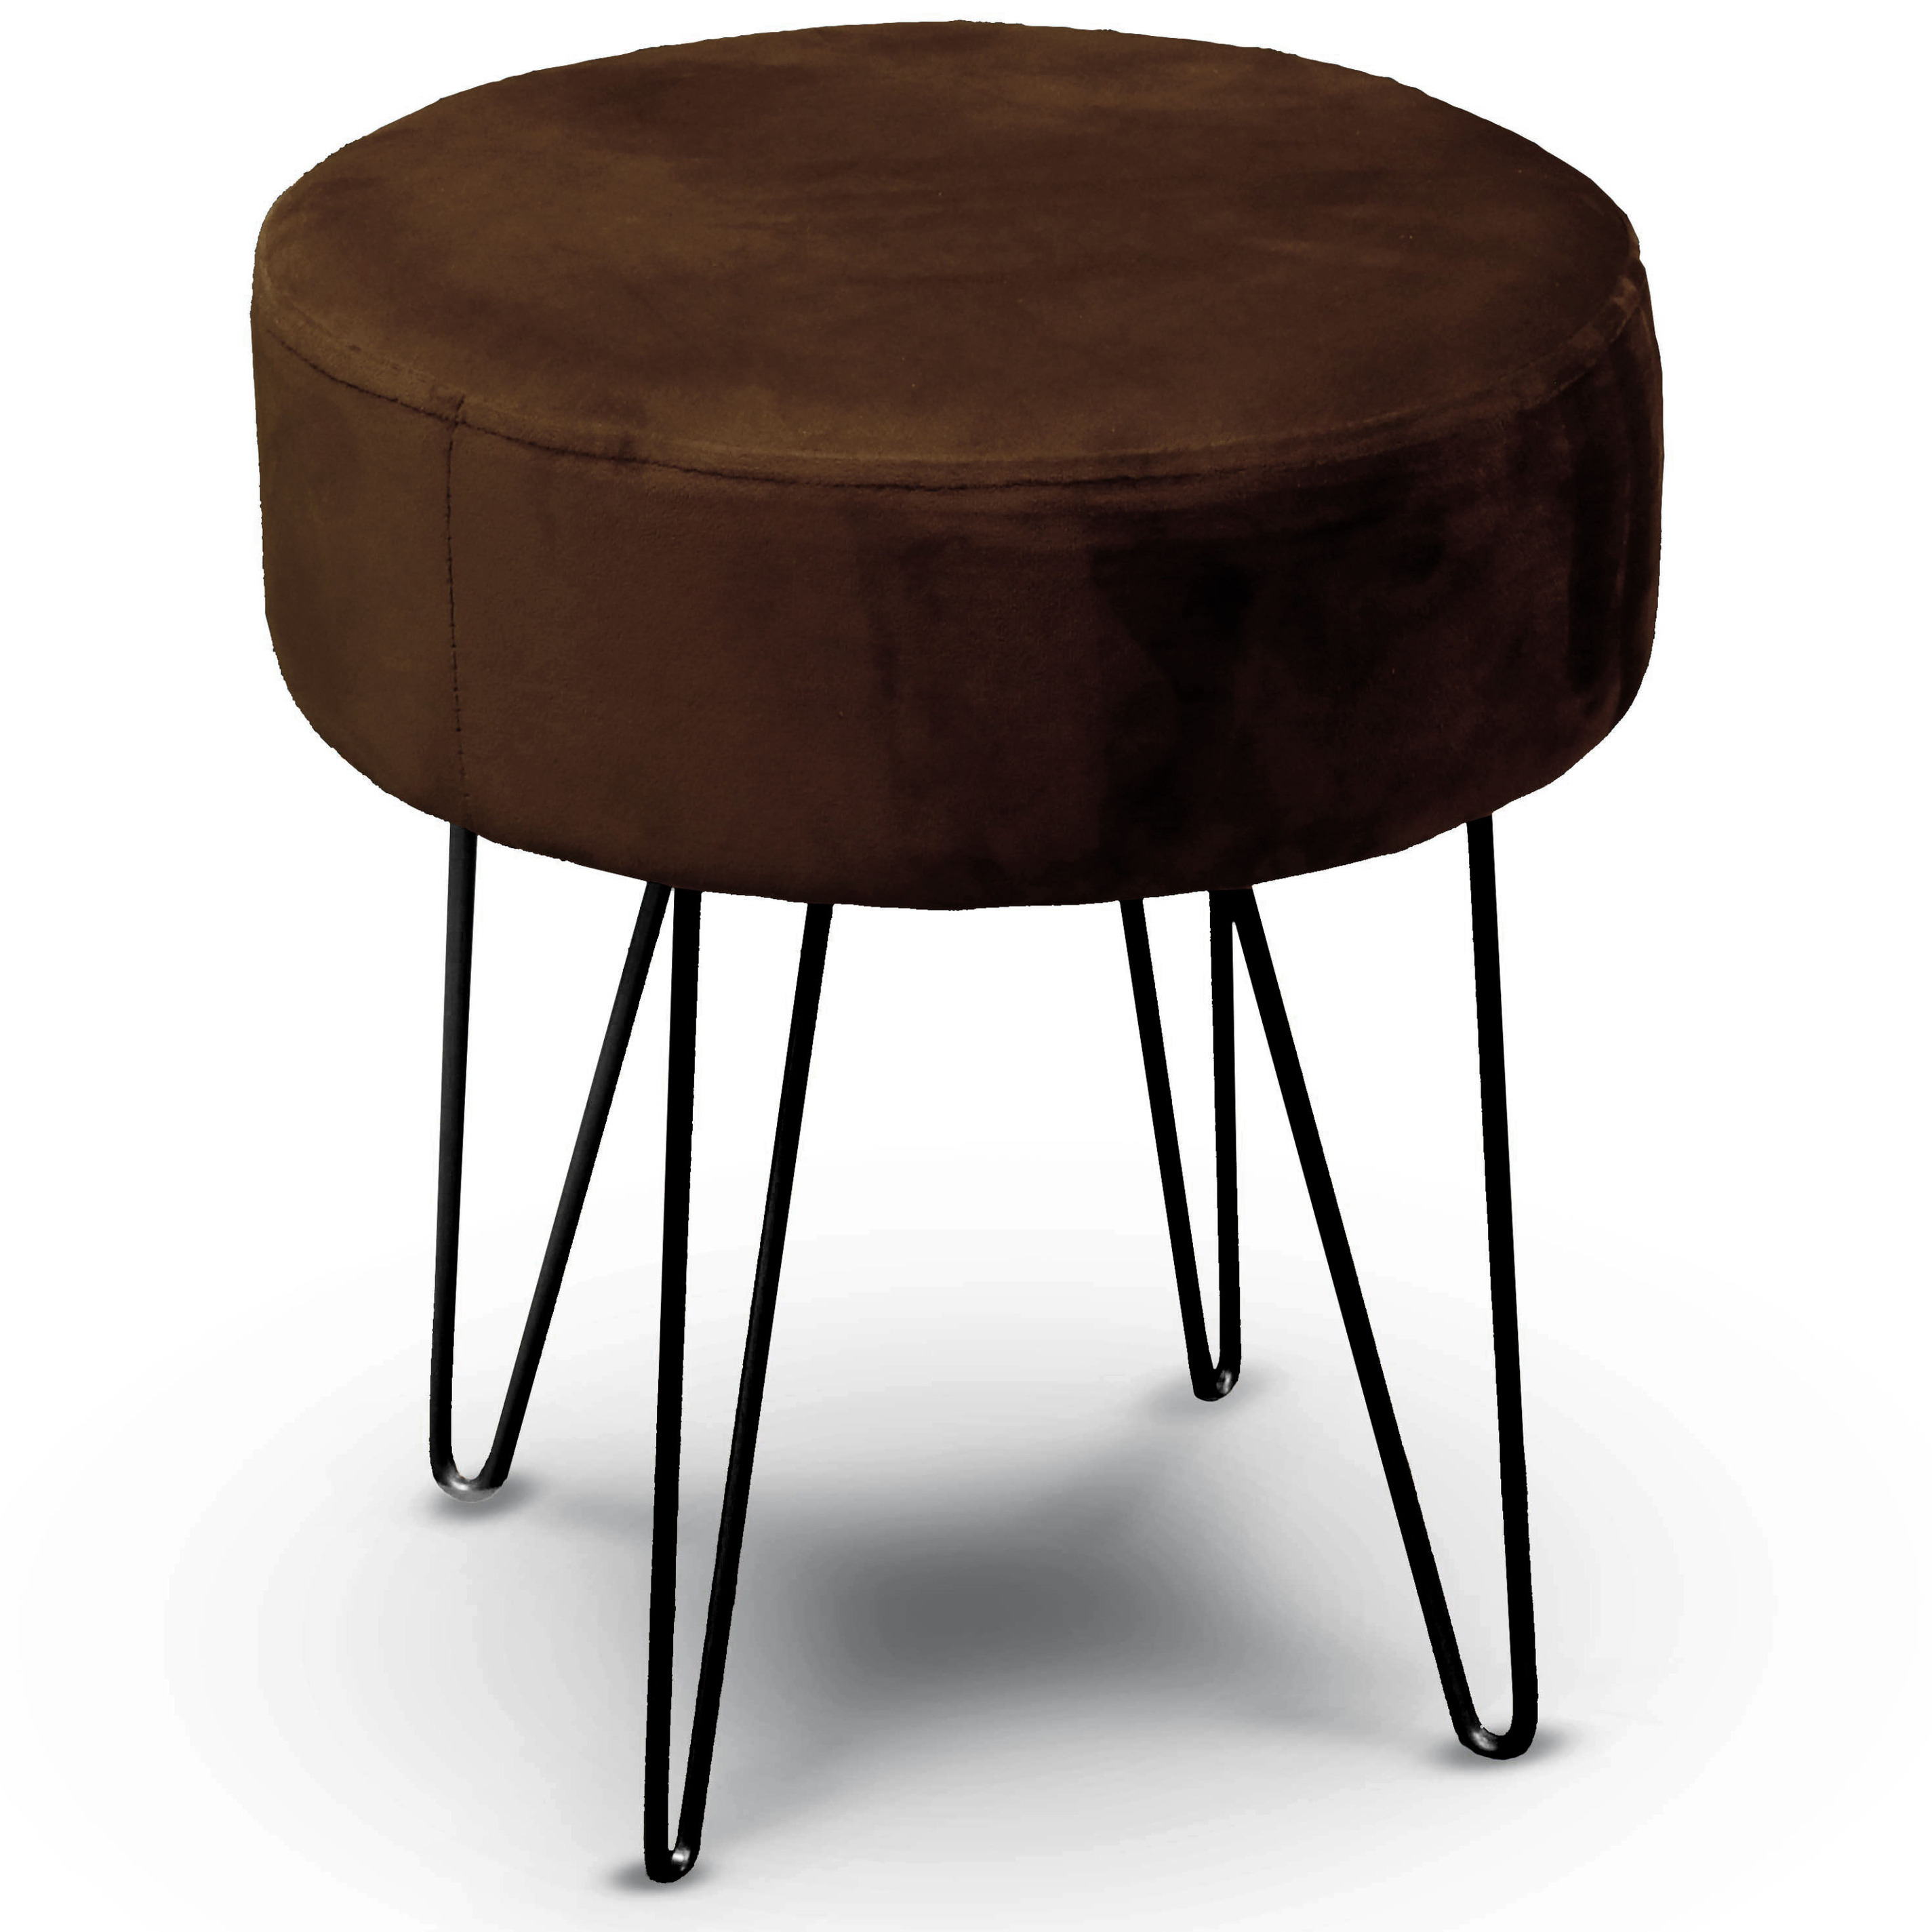 Velvet kruk Davy - donker bruin - metaal/stof - D35 x H40 cm - bijzet stoeltjes